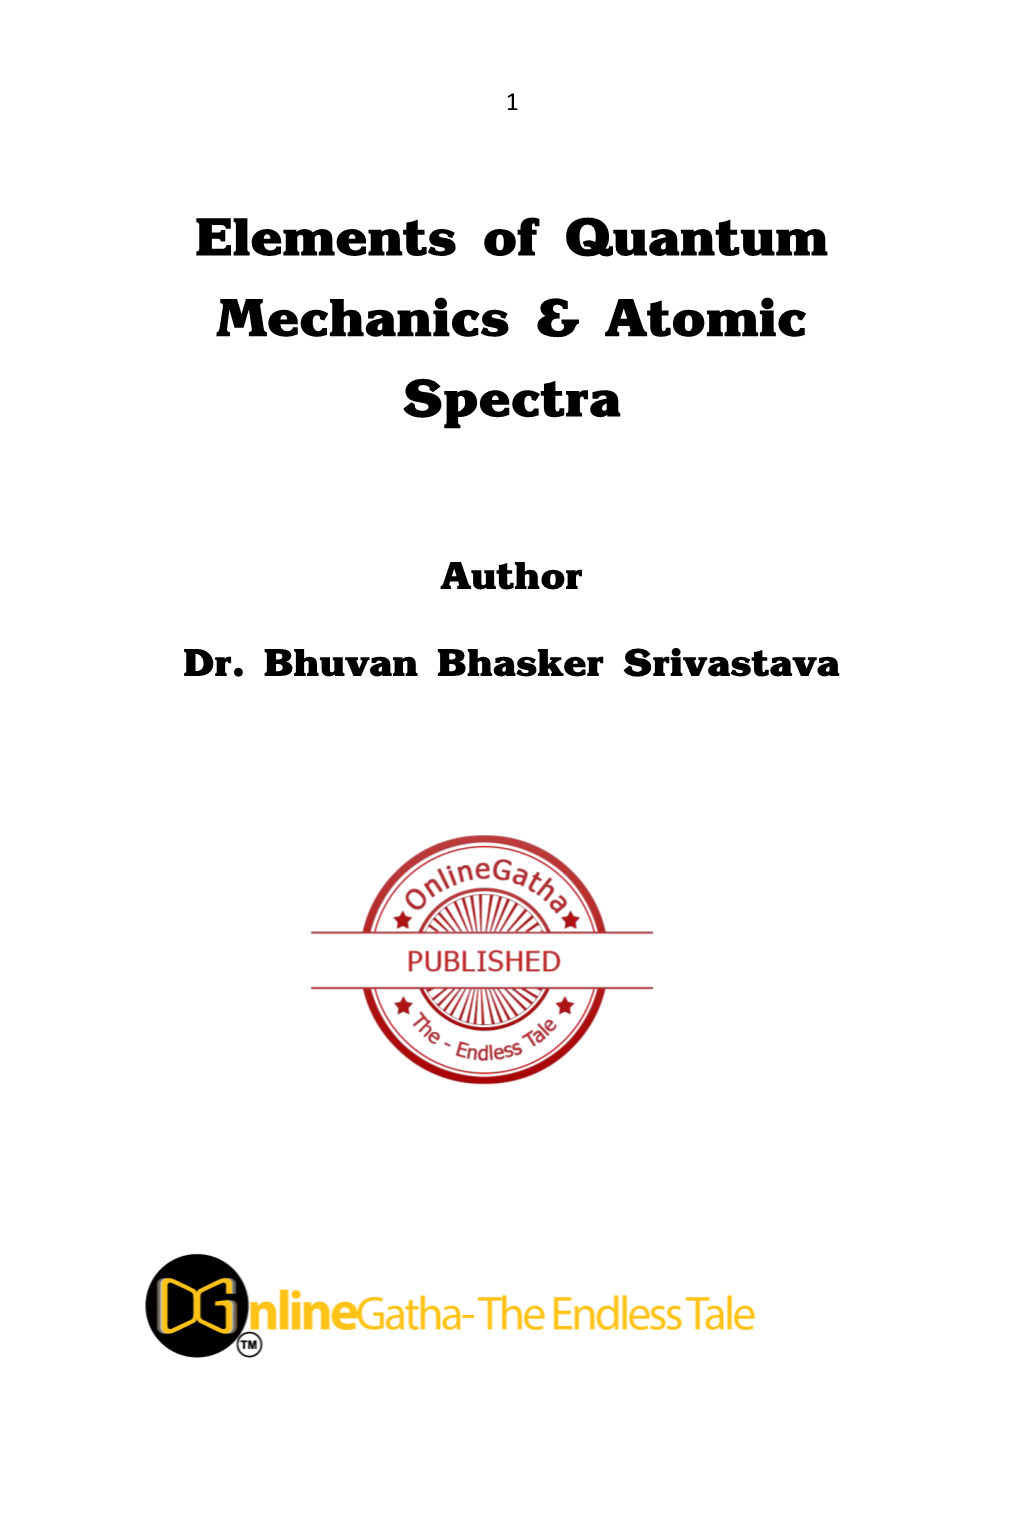 Elements of Quantum Mechanics & Atomic Spectra